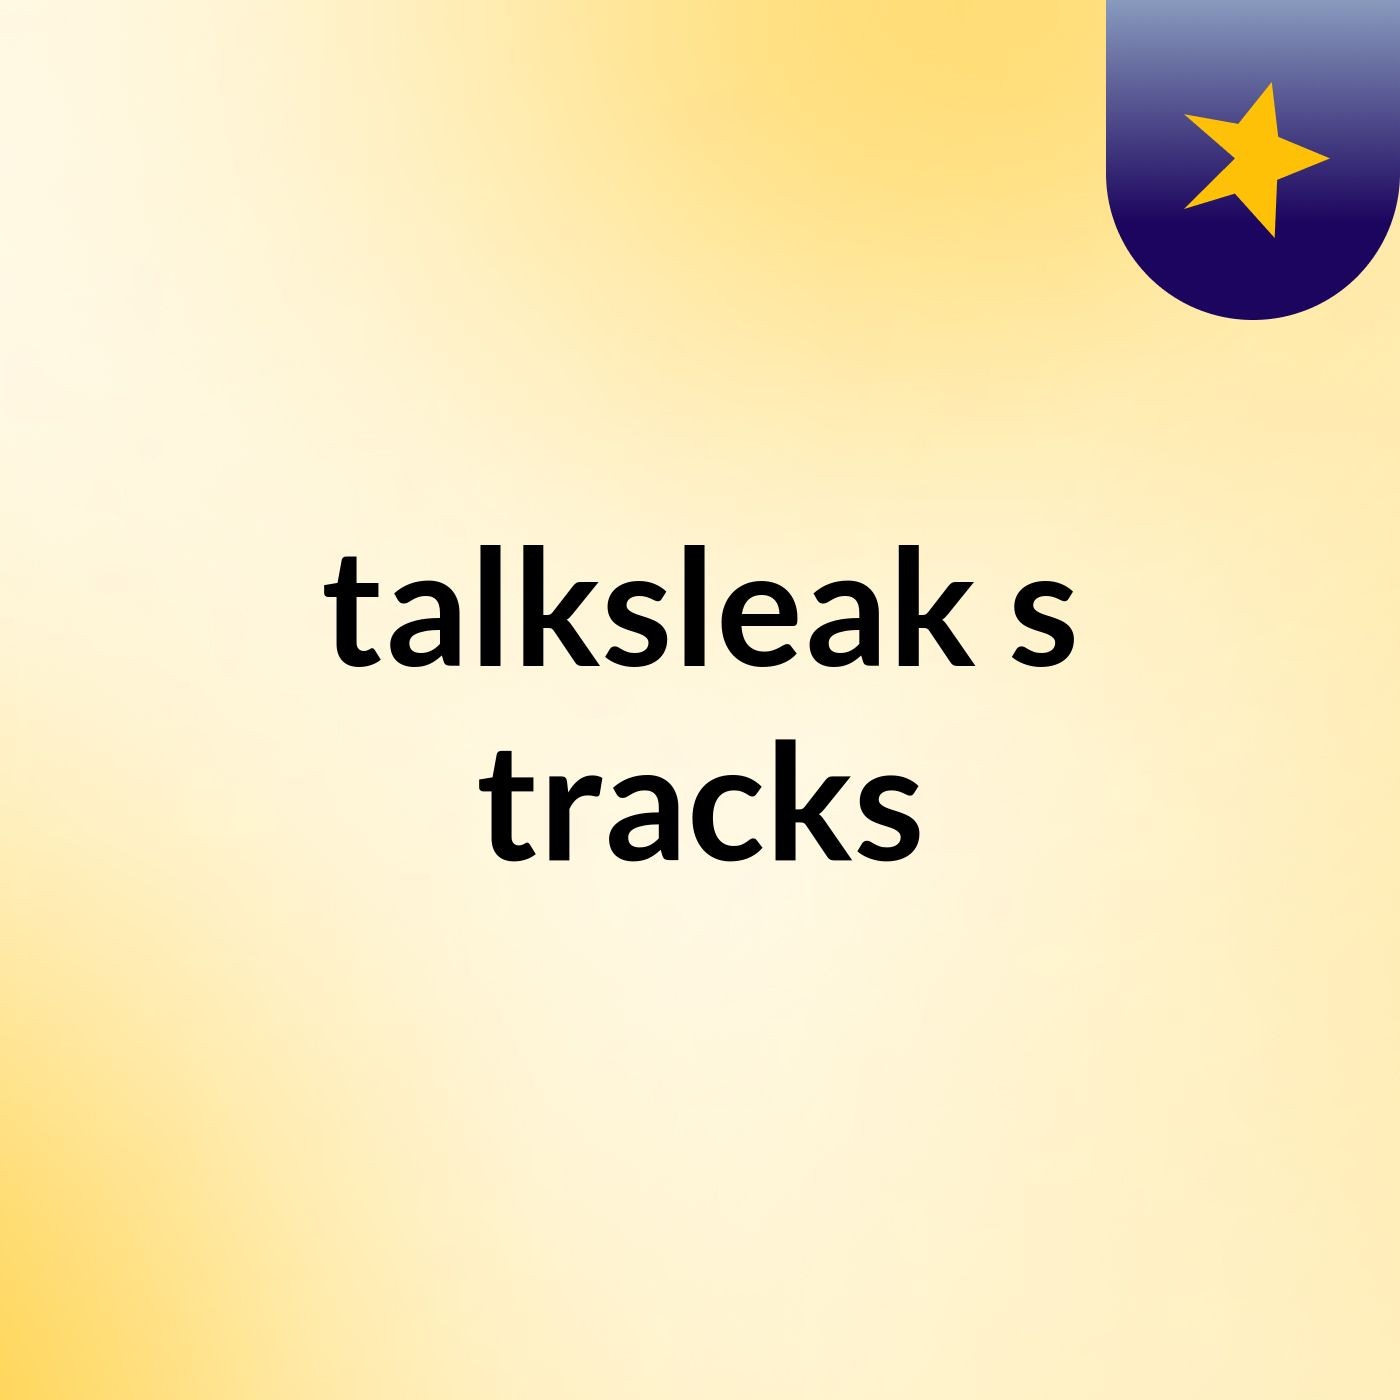 talksleak's tracks